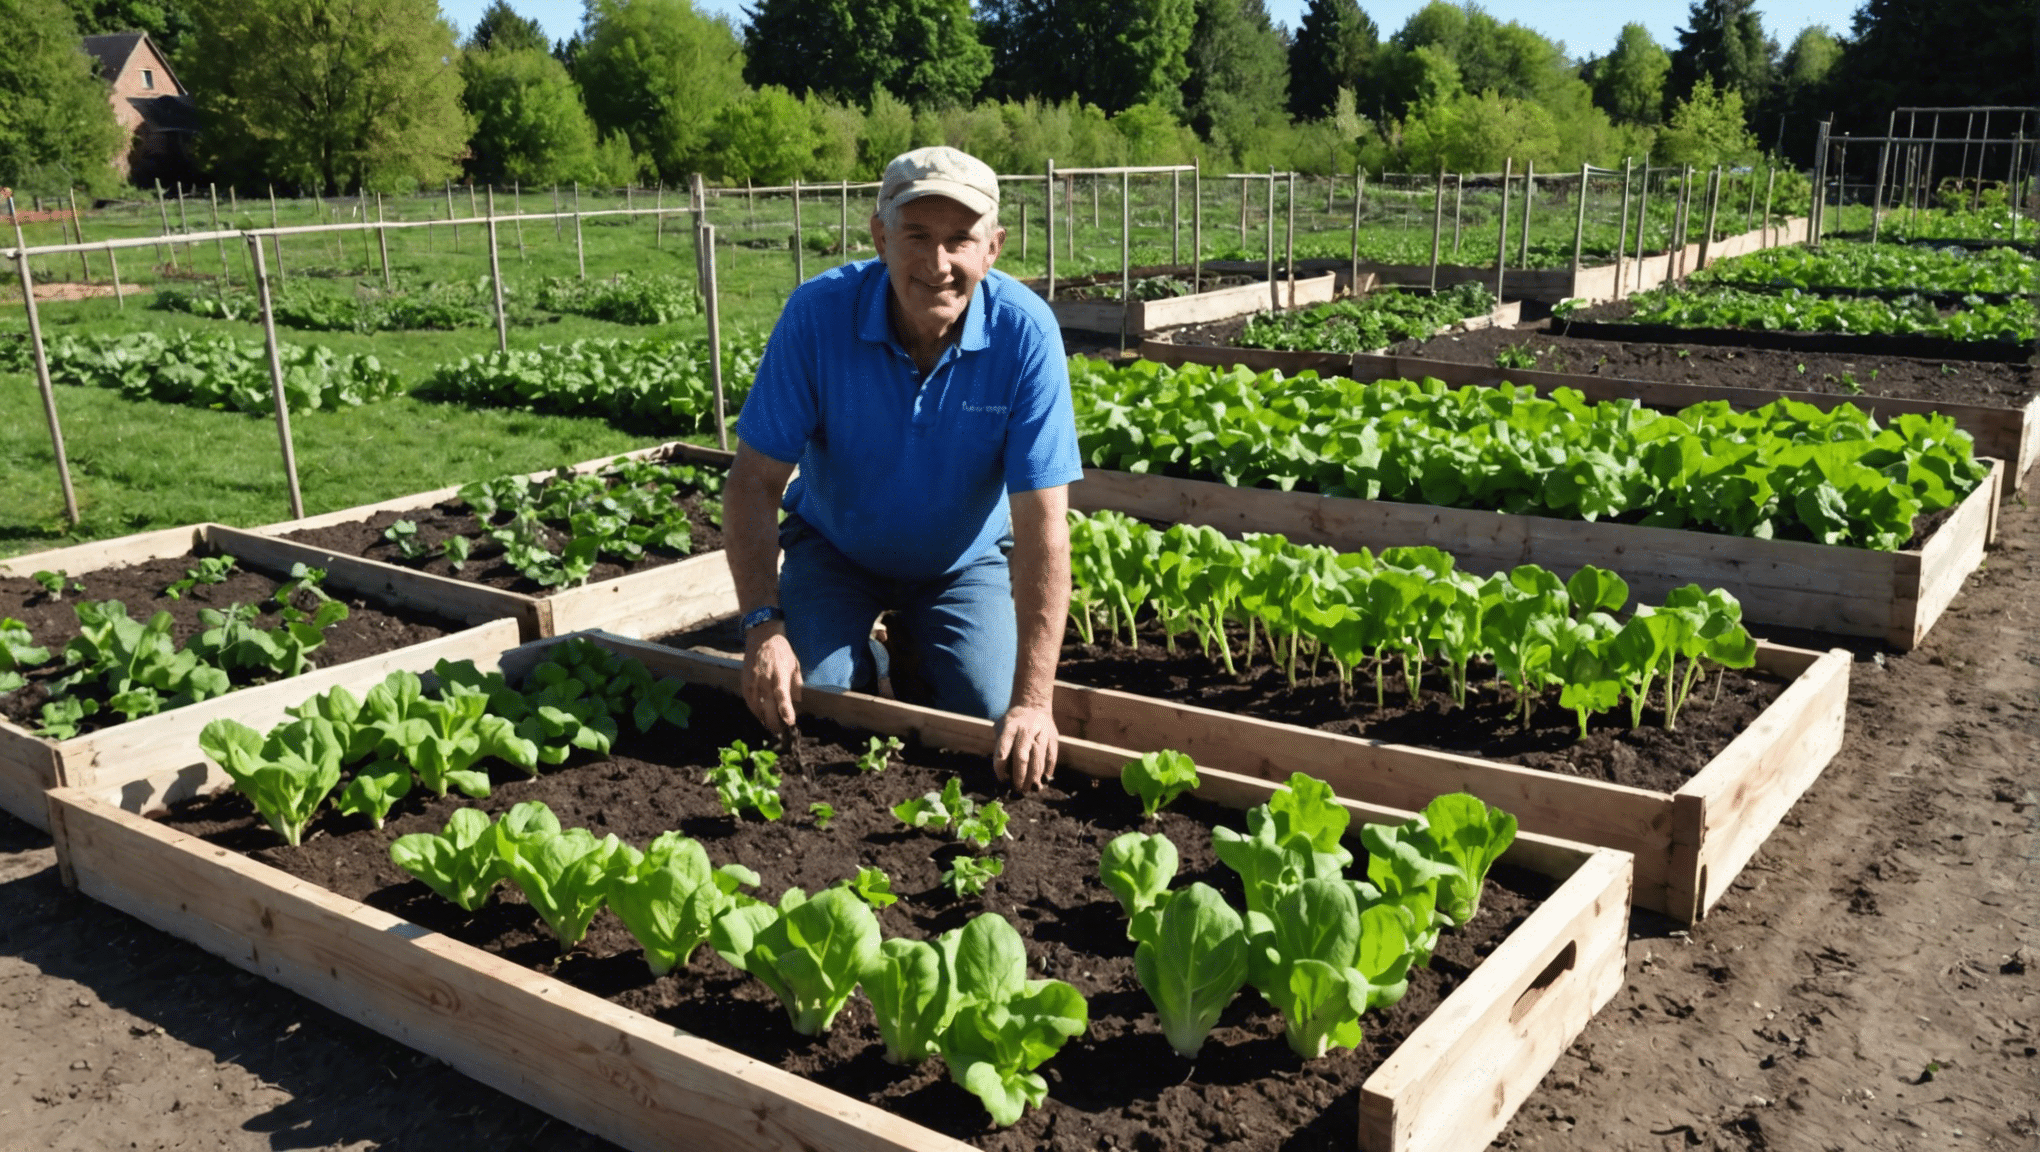 scopri i compiti essenziali da svolgere nell'orto all'inizio di aprile per garantire un buon raccolto. consigli e suggerimenti per iniziare bene la stagione del giardinaggio.